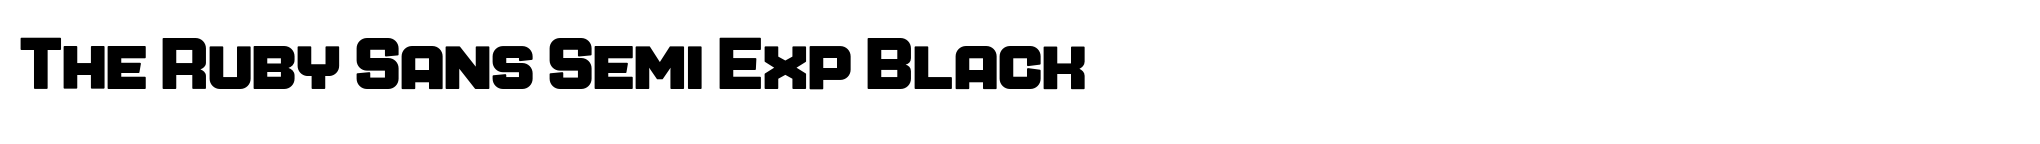 The Ruby Sans Semi Exp Black image